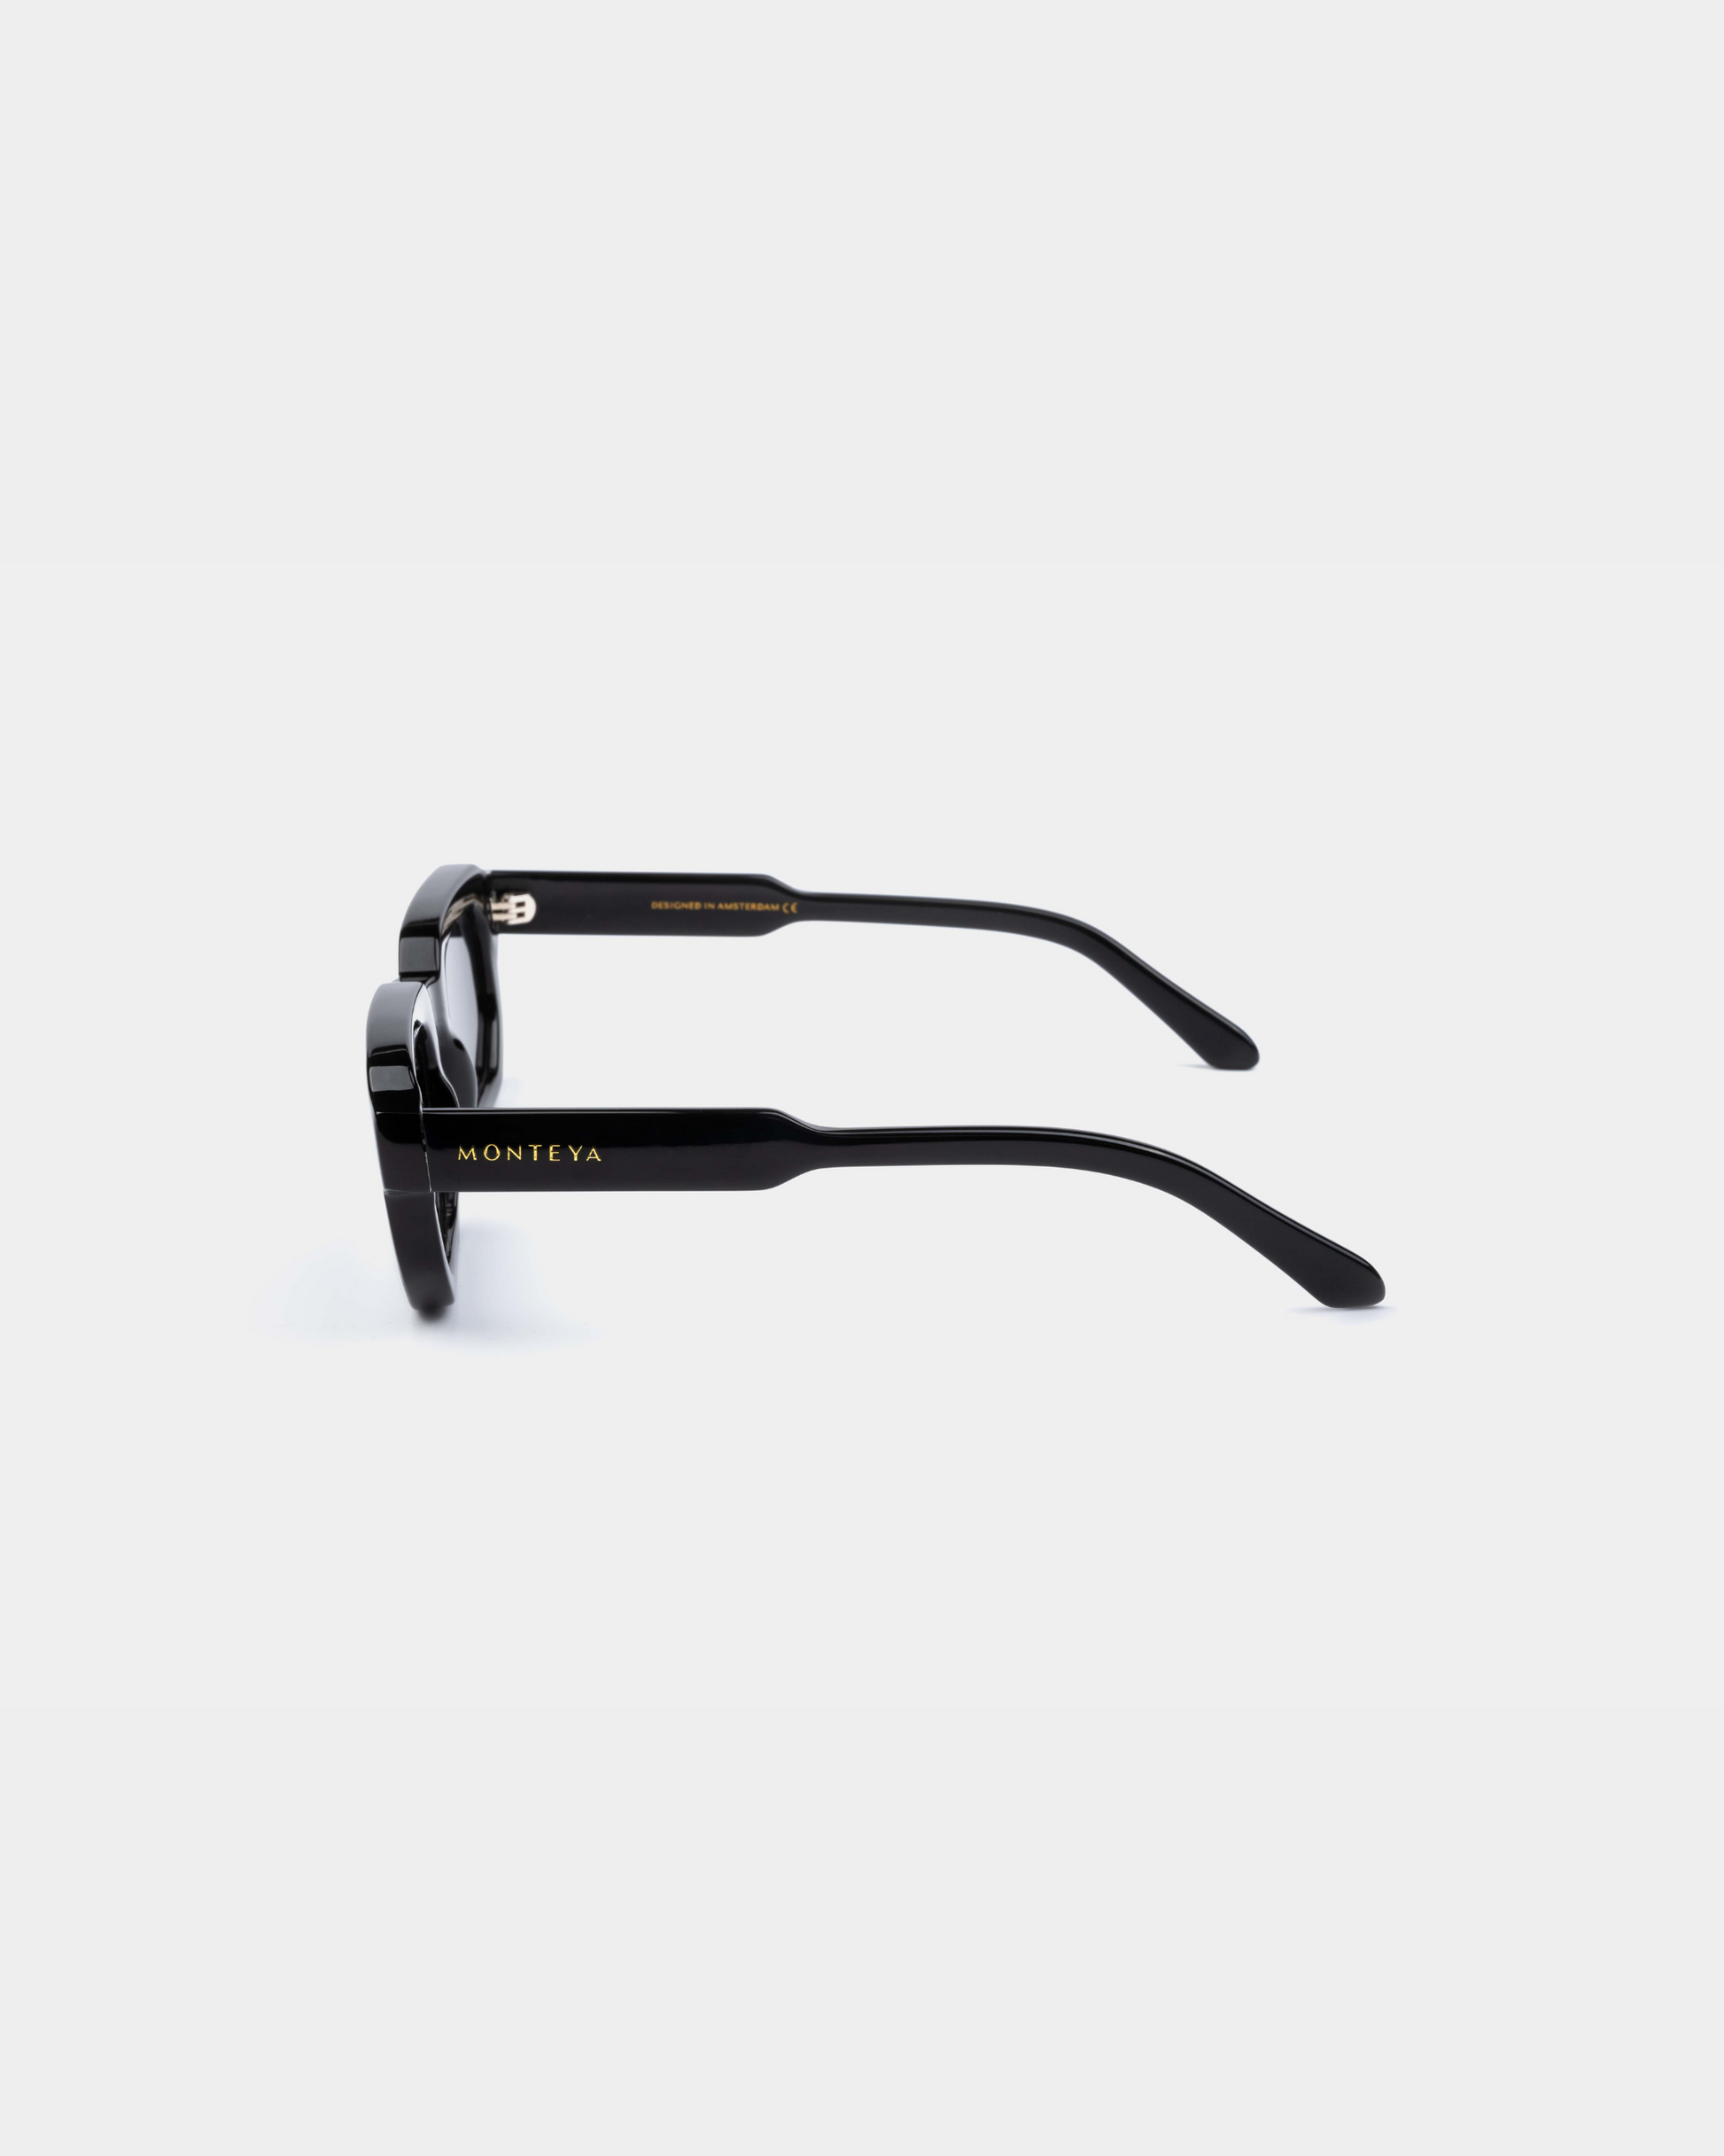 MONTEYA Urban - Opaque - Acetate Frame - TAC Polarized Lenses - High End Eyewear - 03